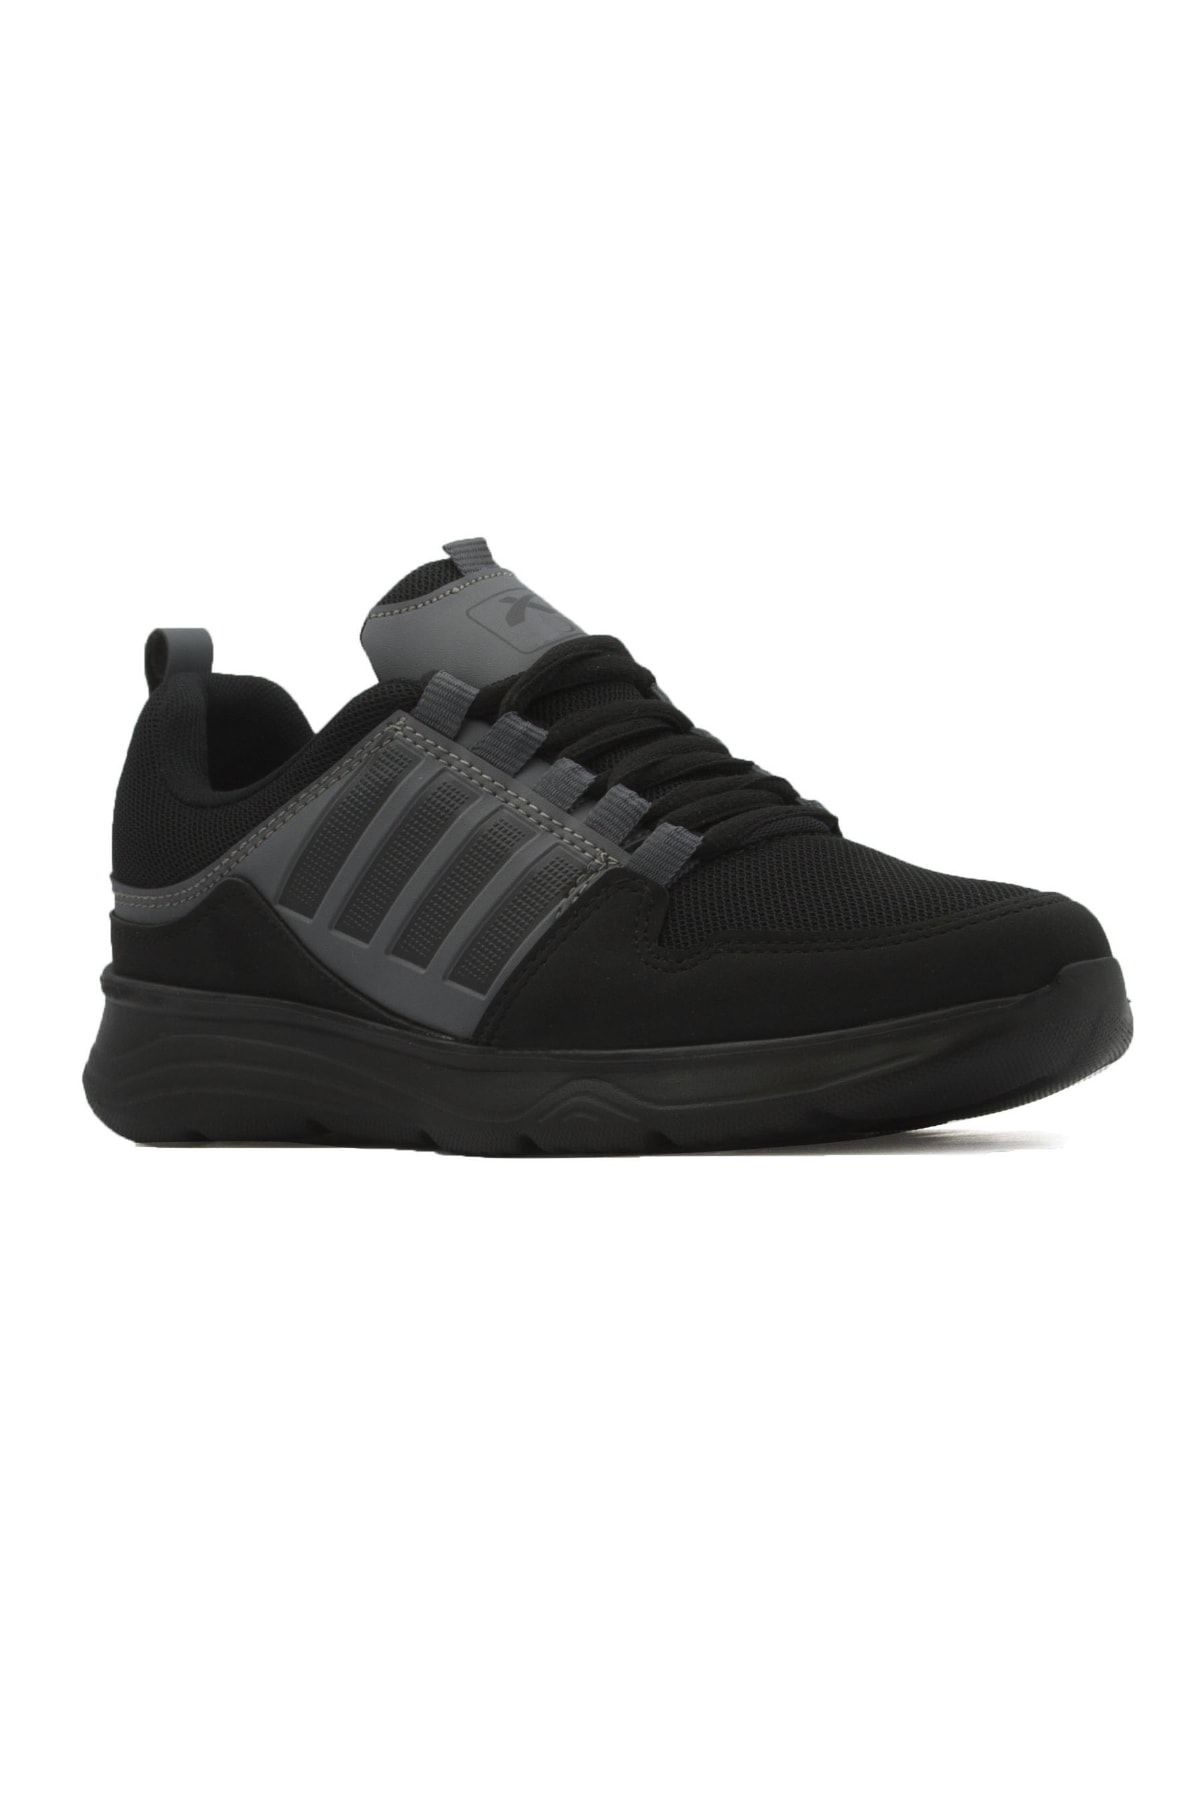 LETAO Gri - Hafif Günlük Unisex Spor Yürüyüş Sneaker Ayakkabı